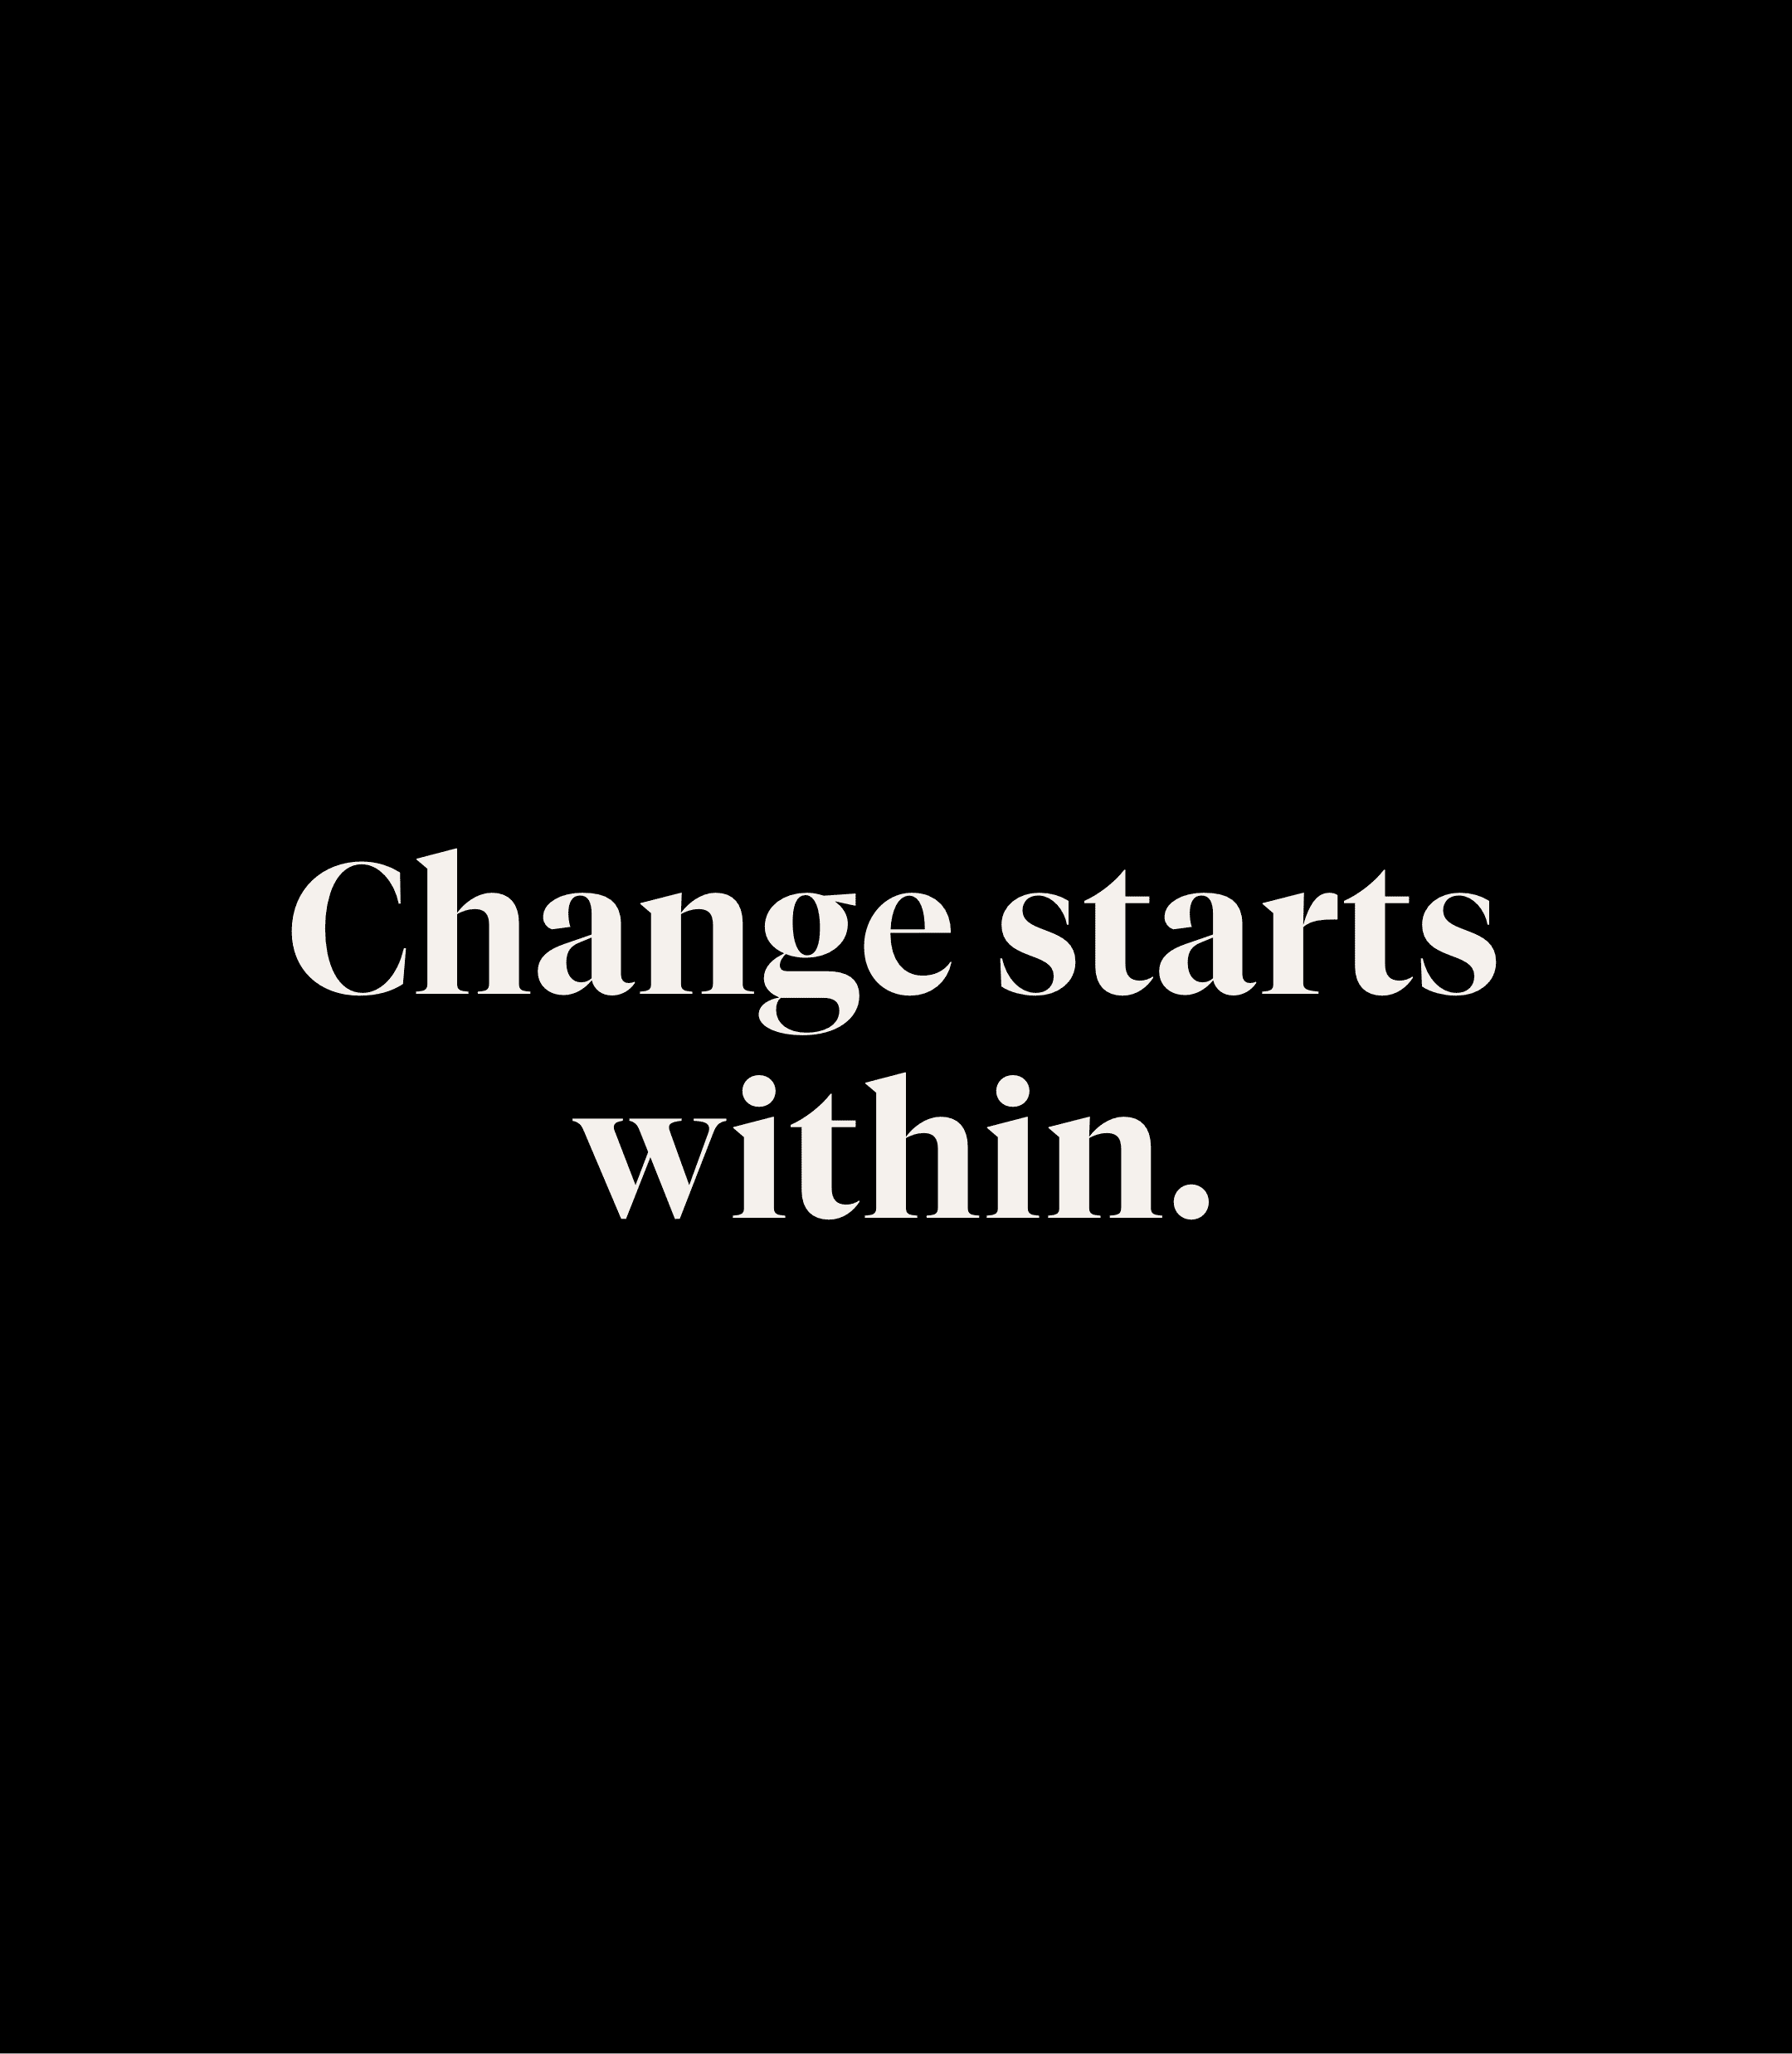 Le changement commence à l'intérieur. C'est notre engagement à faire mieux.